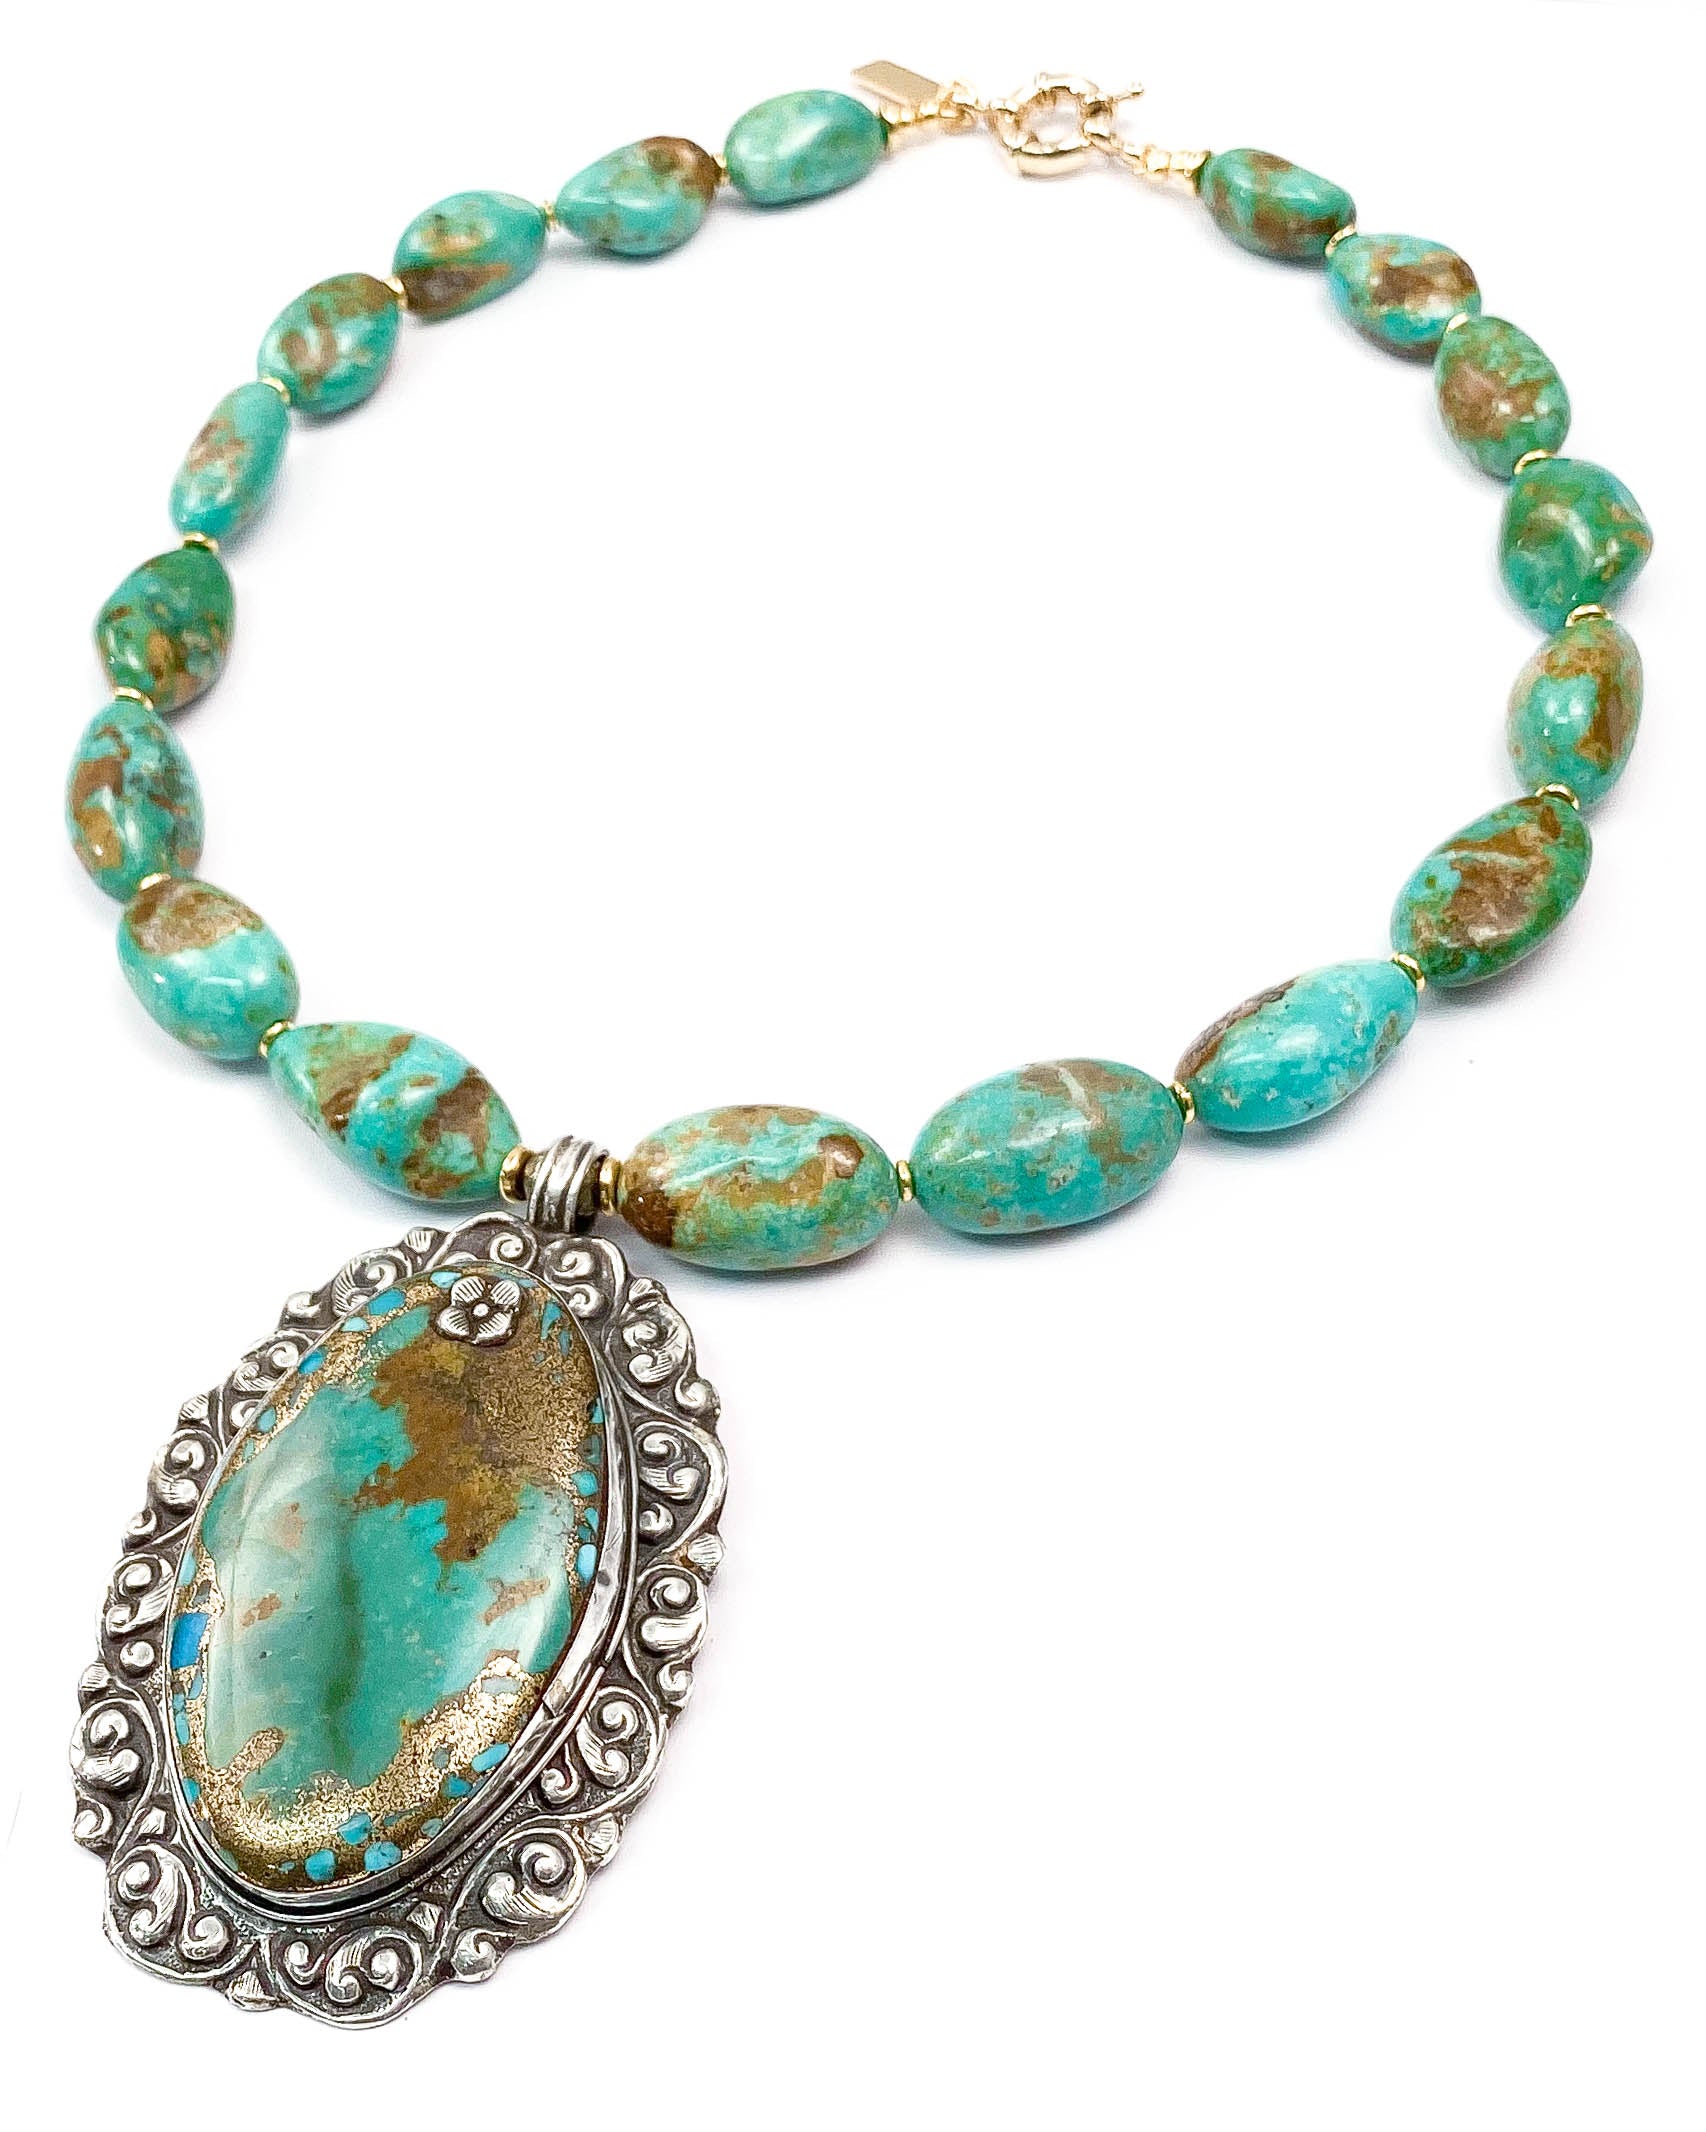 Mohave Sleeping Beauty Turquoise Pendant on Kingman Turquoise Necklace